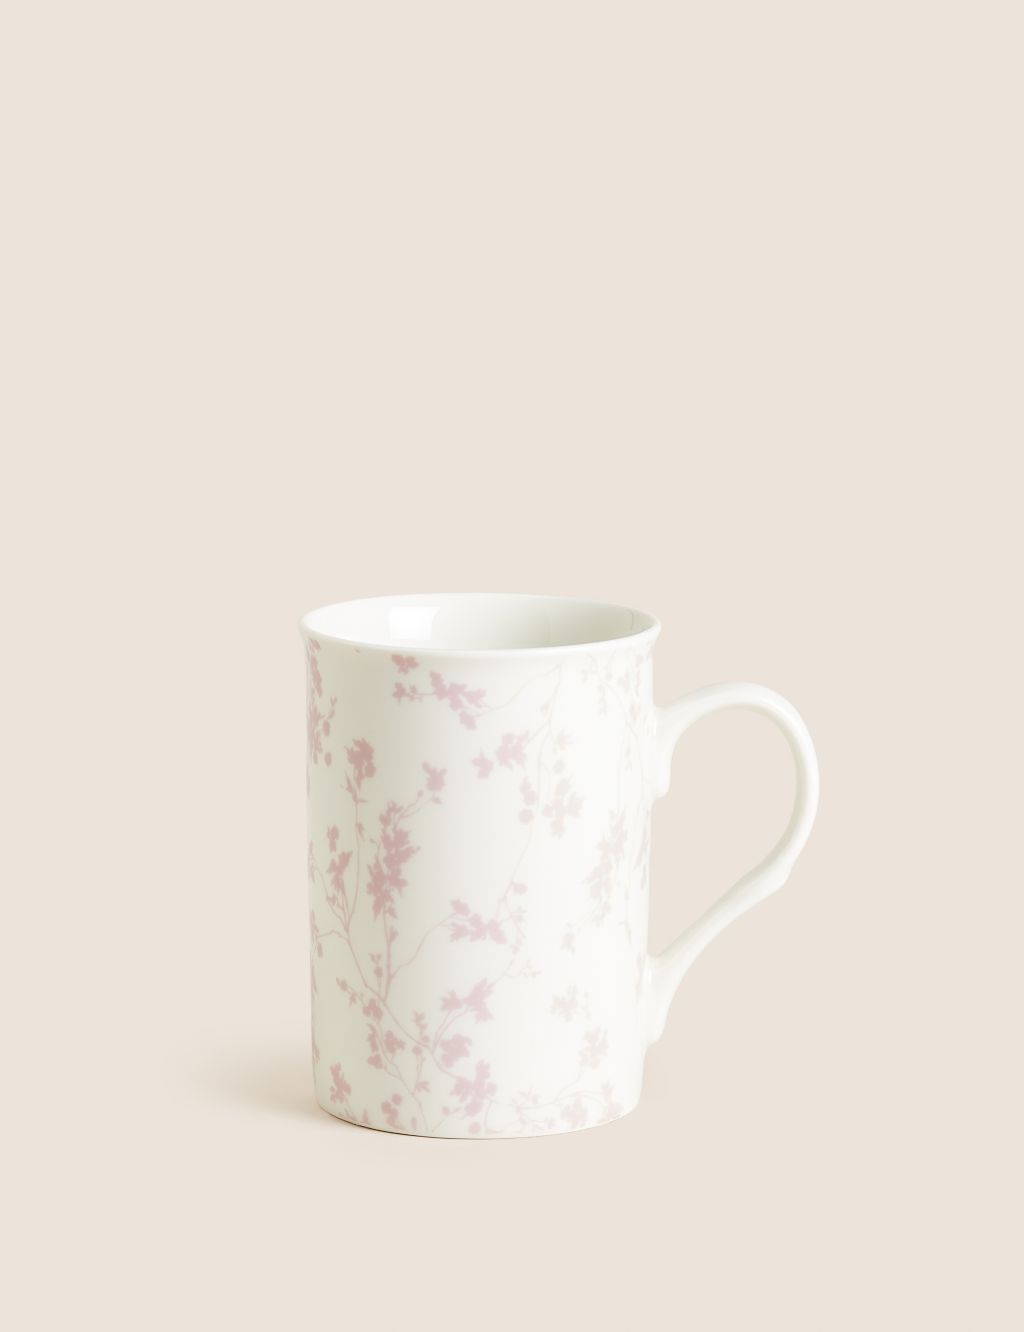 Cherry Blossom Mug image 1